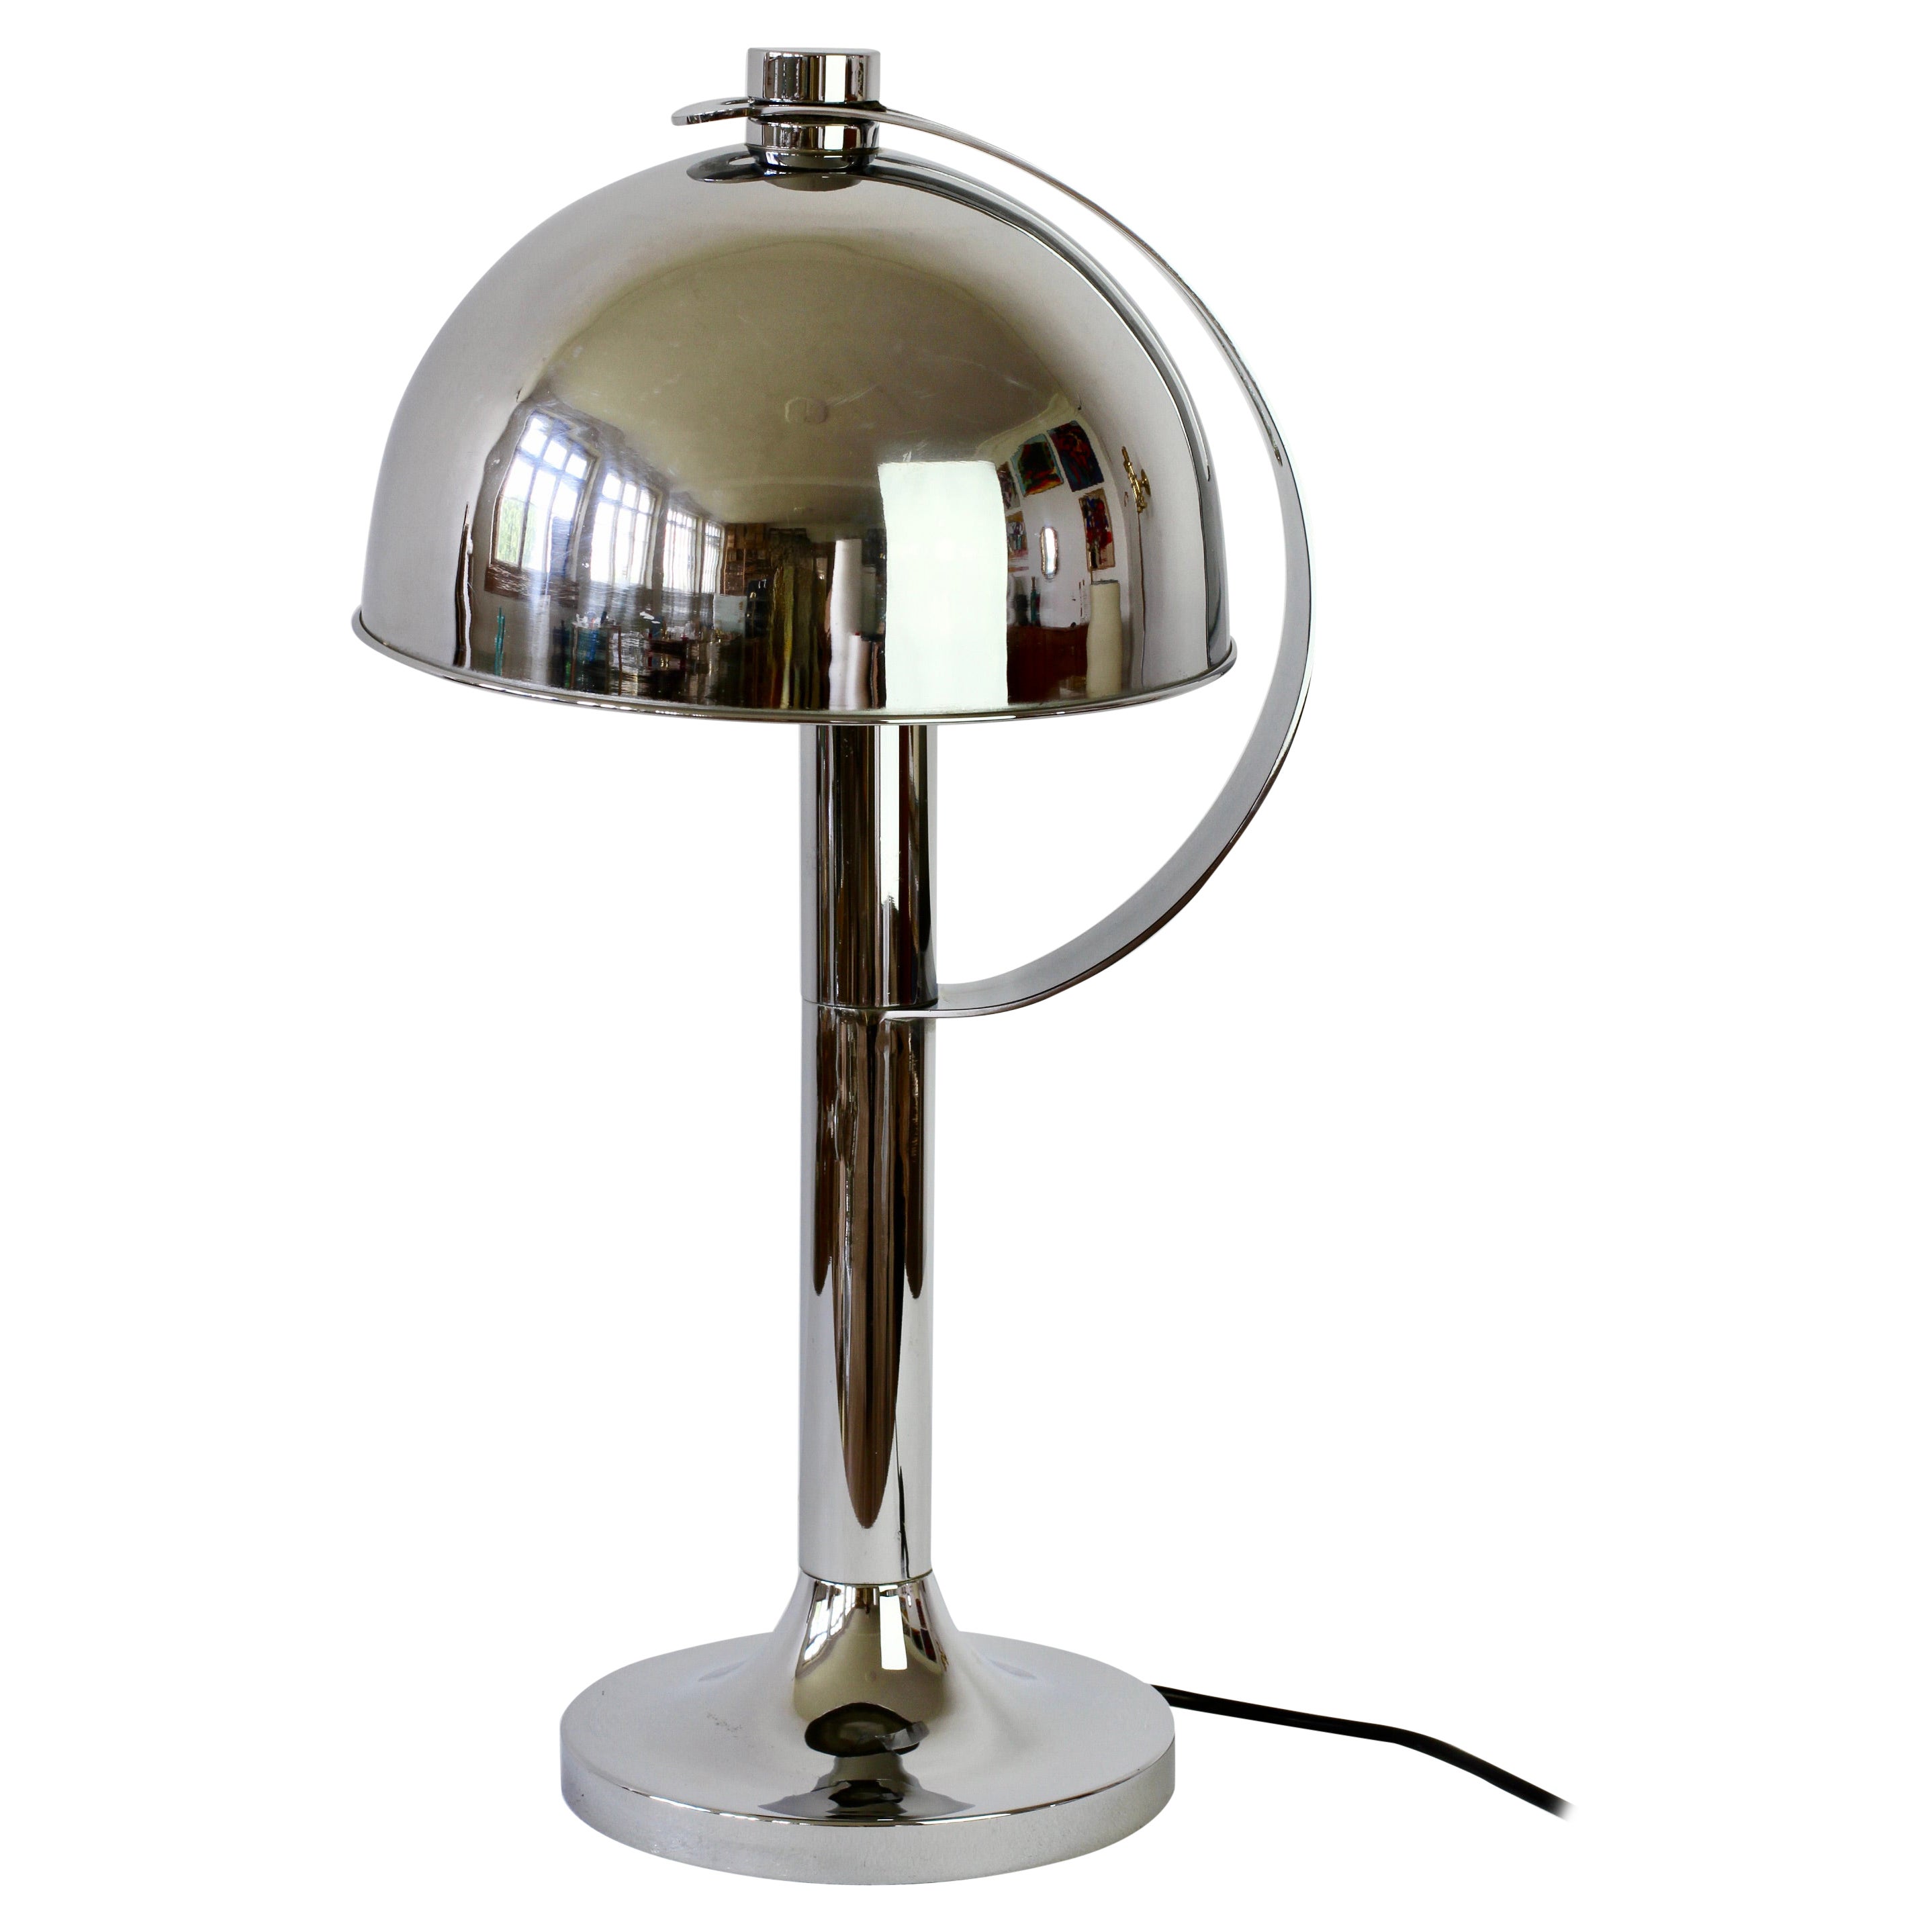 Seltene verstellbare Florian Schulz Mid-Century Vintage Modernistische verchromte Vintage-Tischlampe